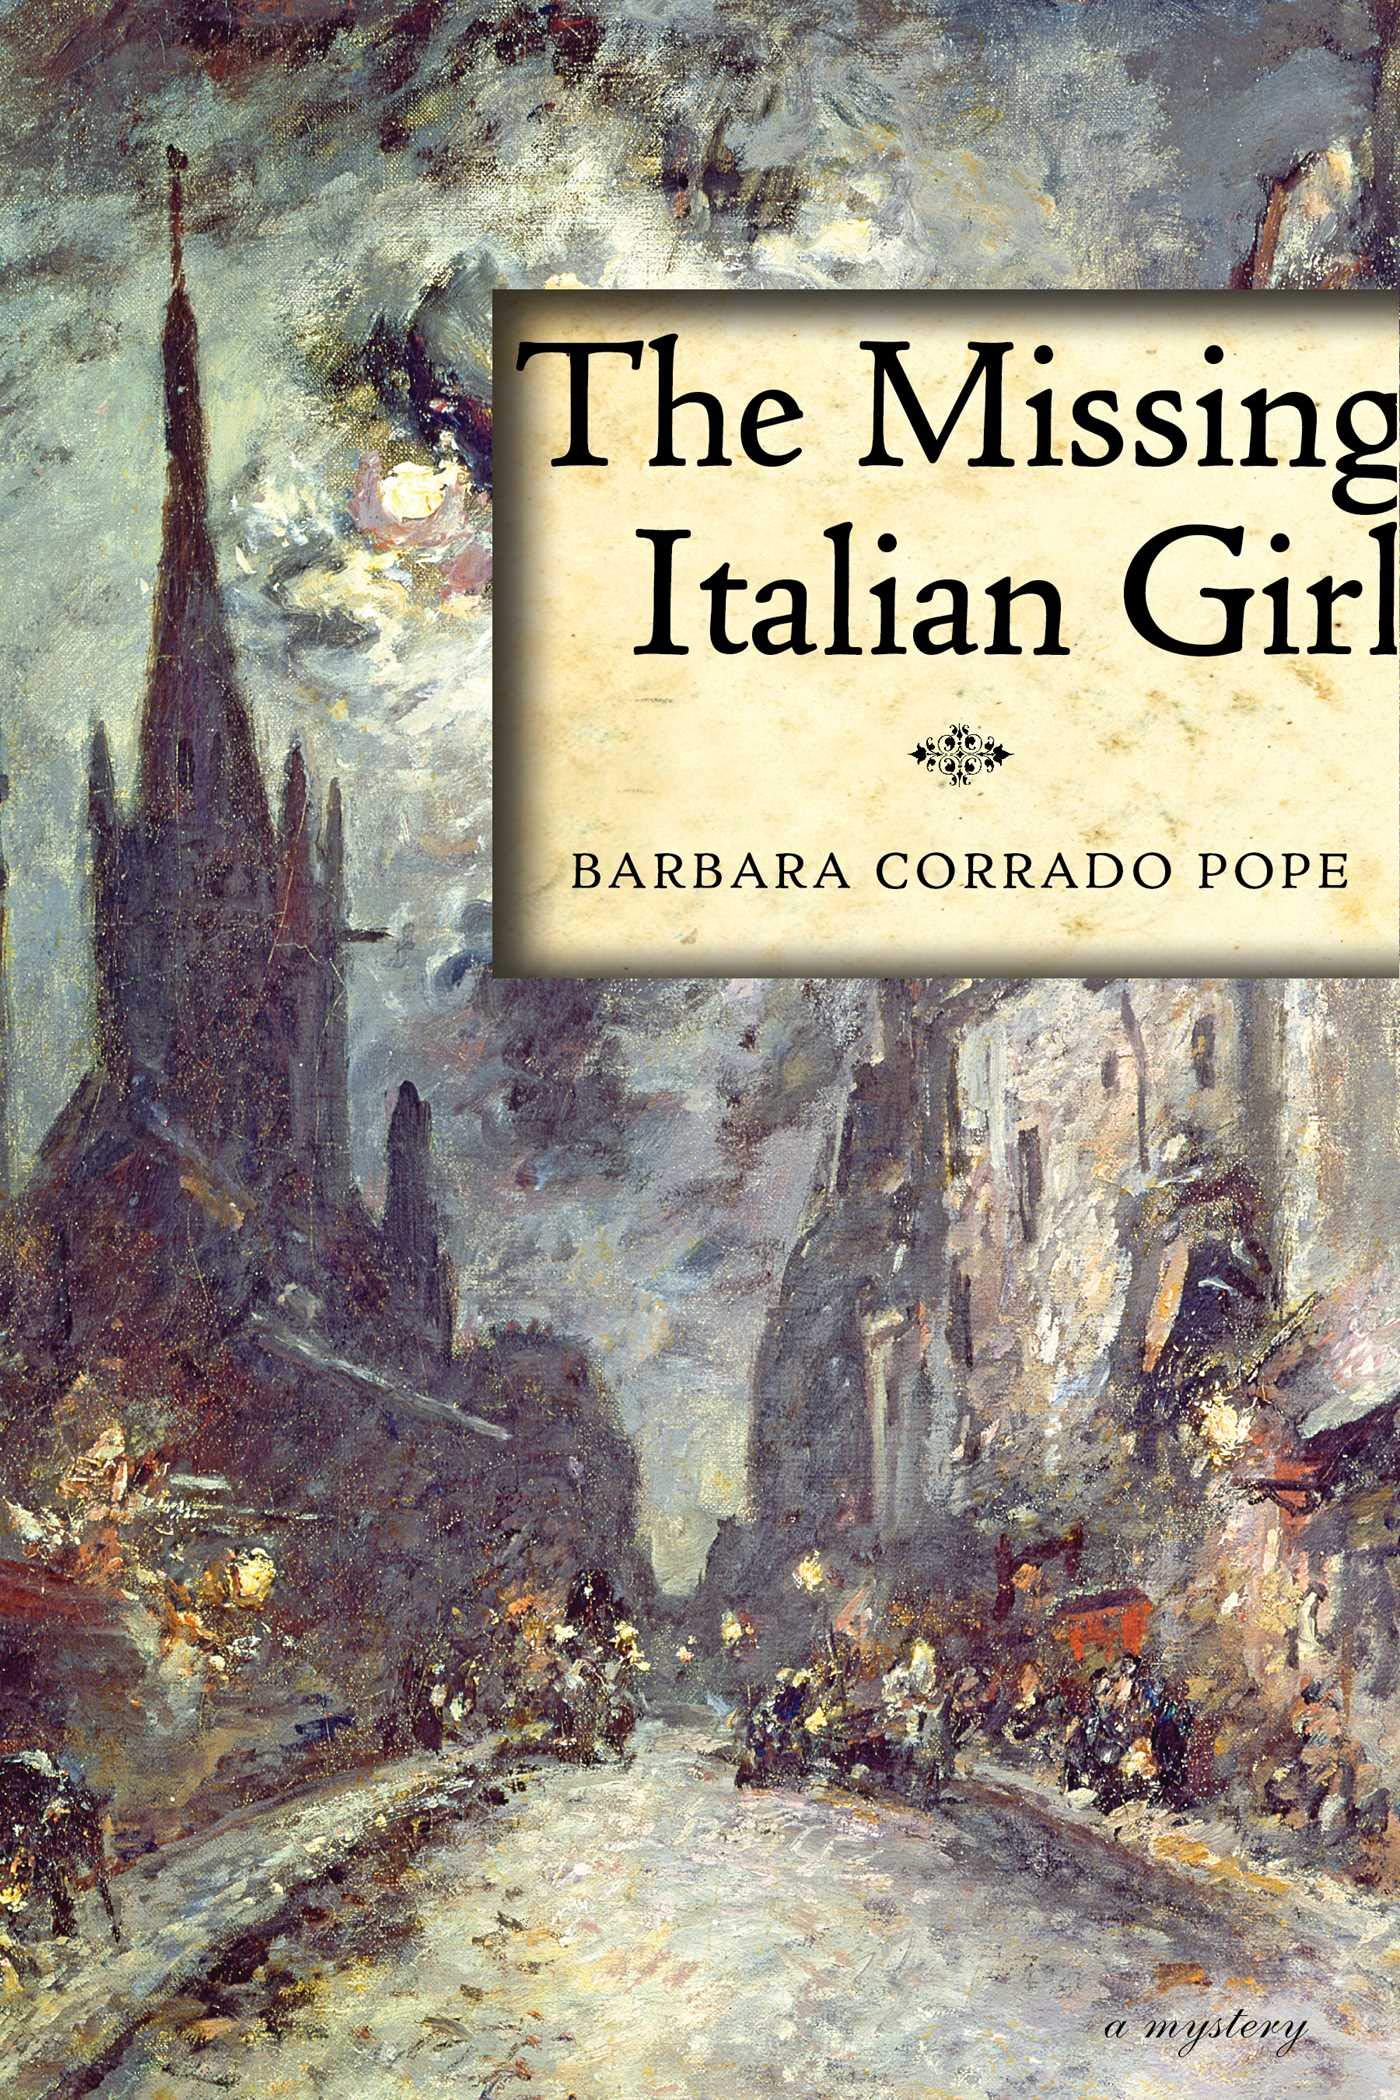 The Missing Italian Girl